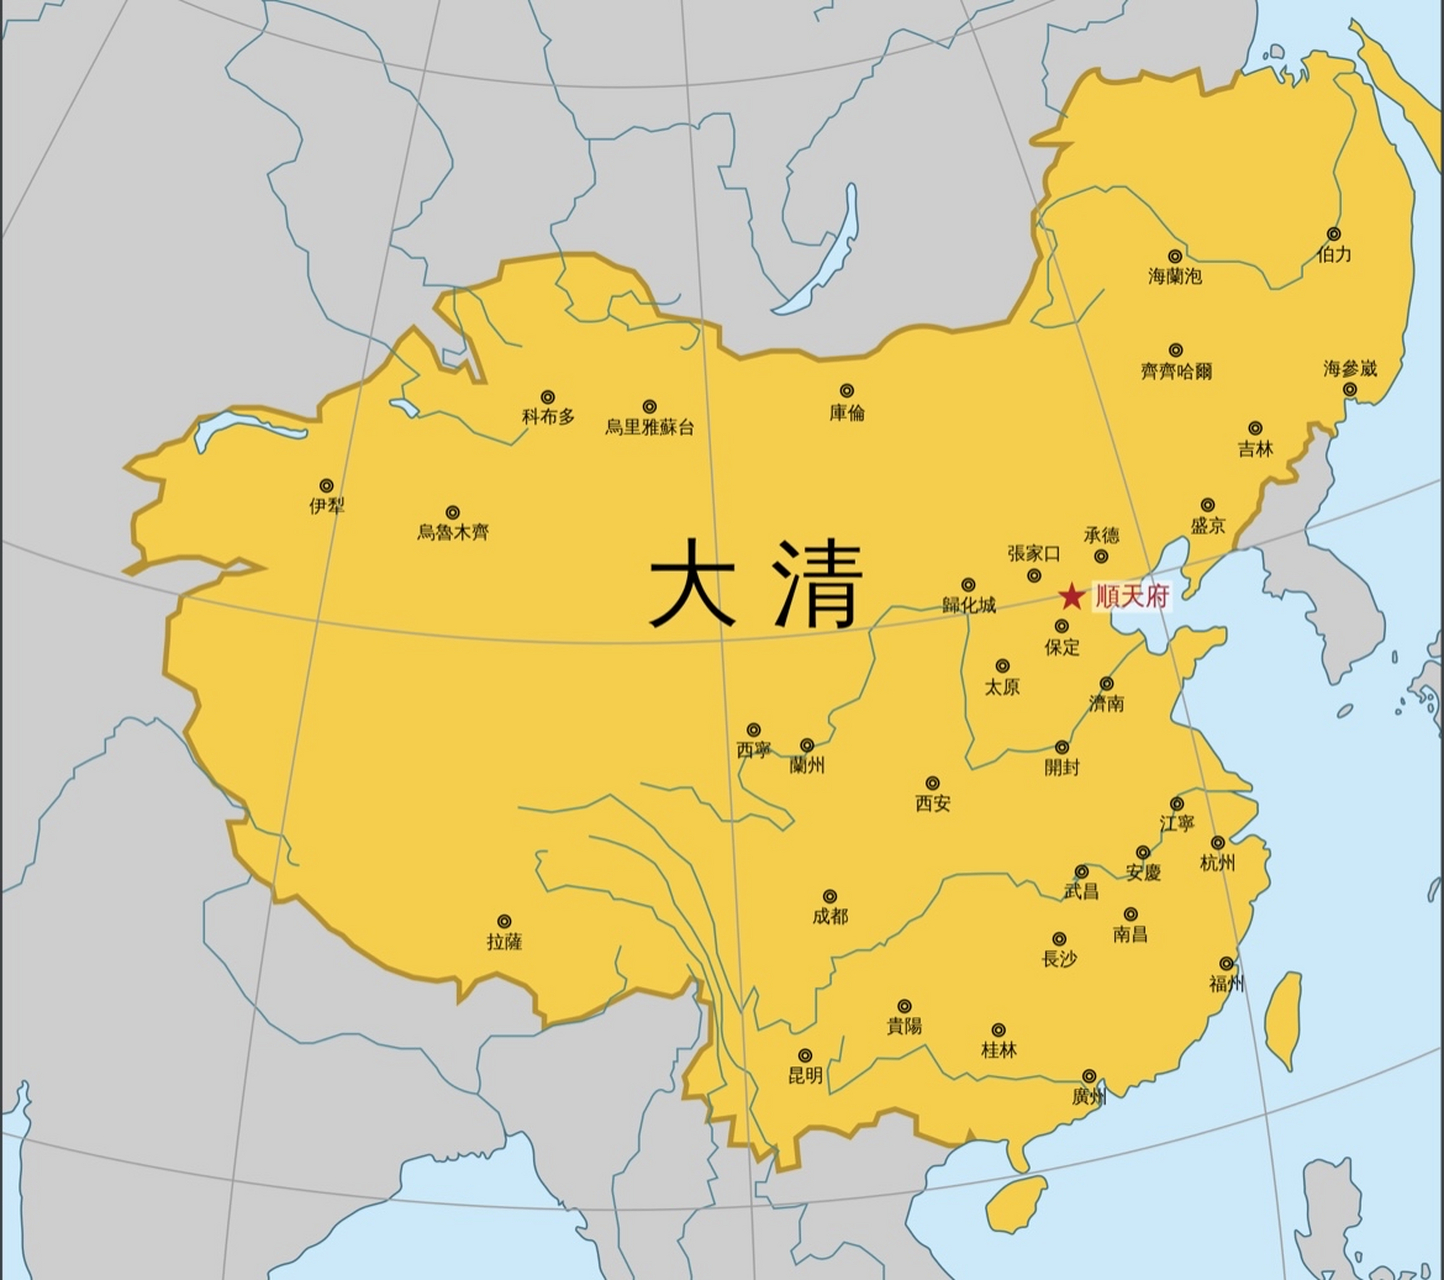 中国现在的面积960万平方公里,清朝时期的面积1380万平方公里,扣掉